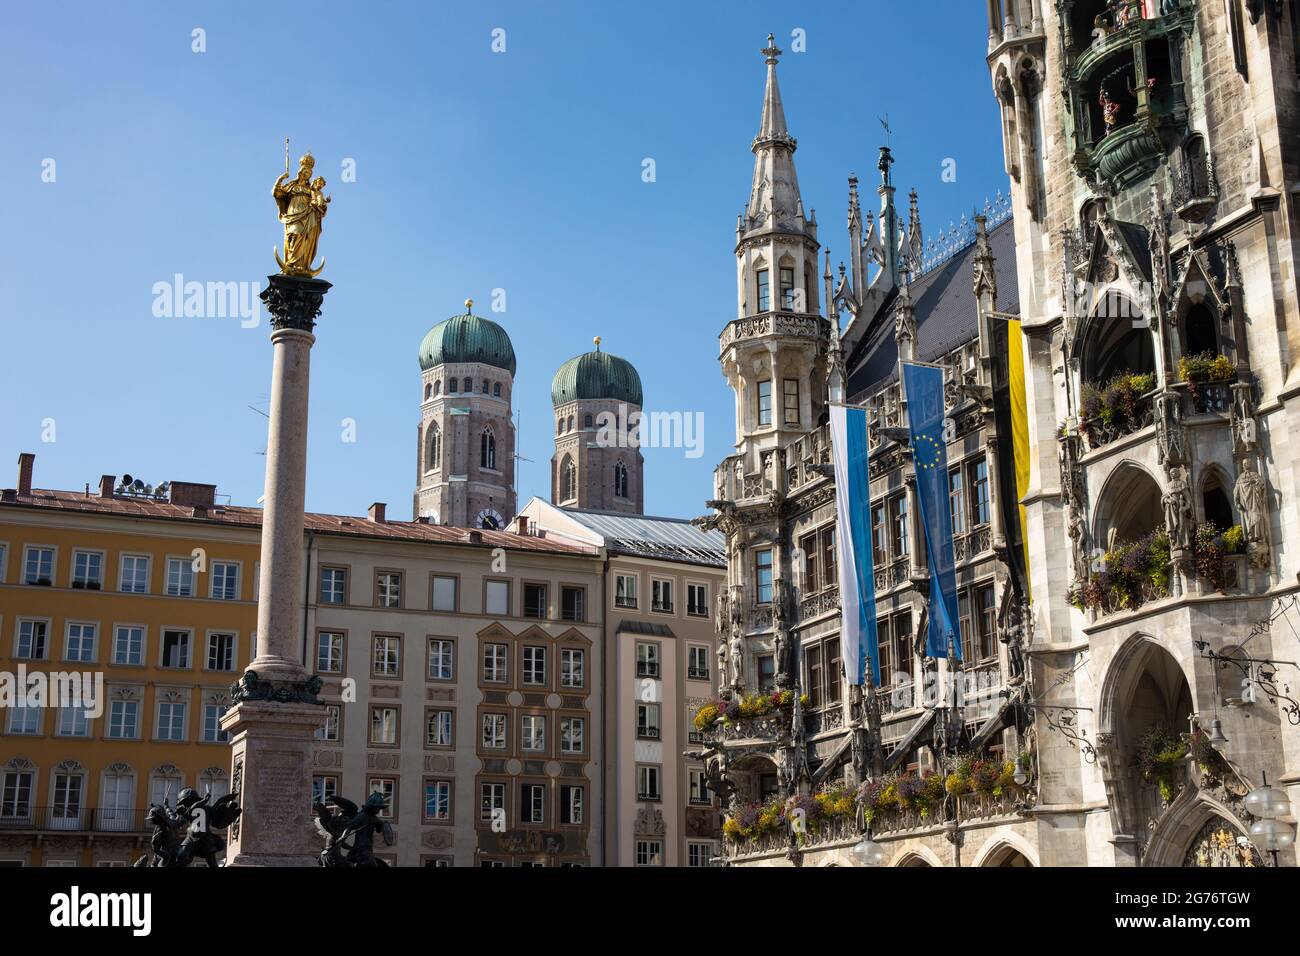 Munich Marienplatz con el ayuntamiento con el Glockenspiel, la columna mariana y al fondo la Iglesia de Nuestra Señora (Frauenkirche) Foto de stock